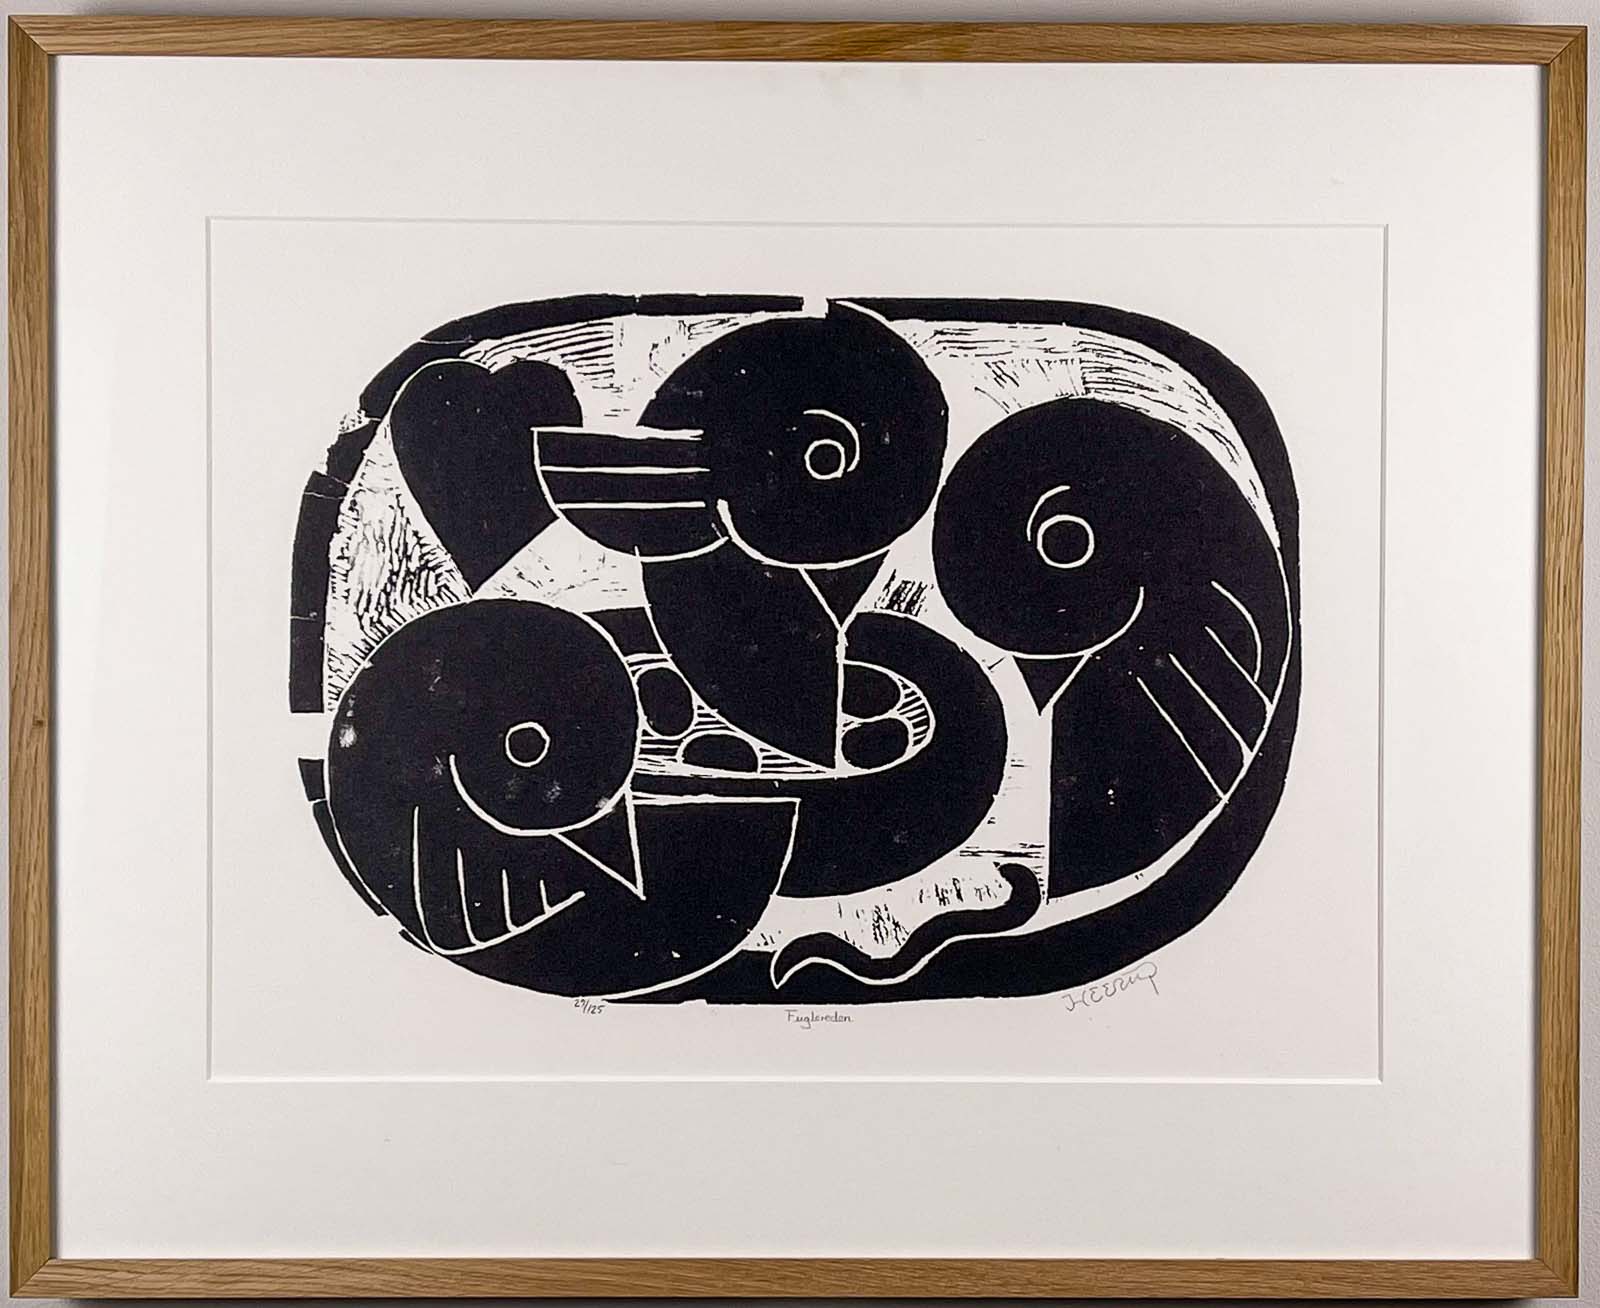 Henry Heerup – "Bird's Nest", 1950 - Linocut on paper, framed, museumglass